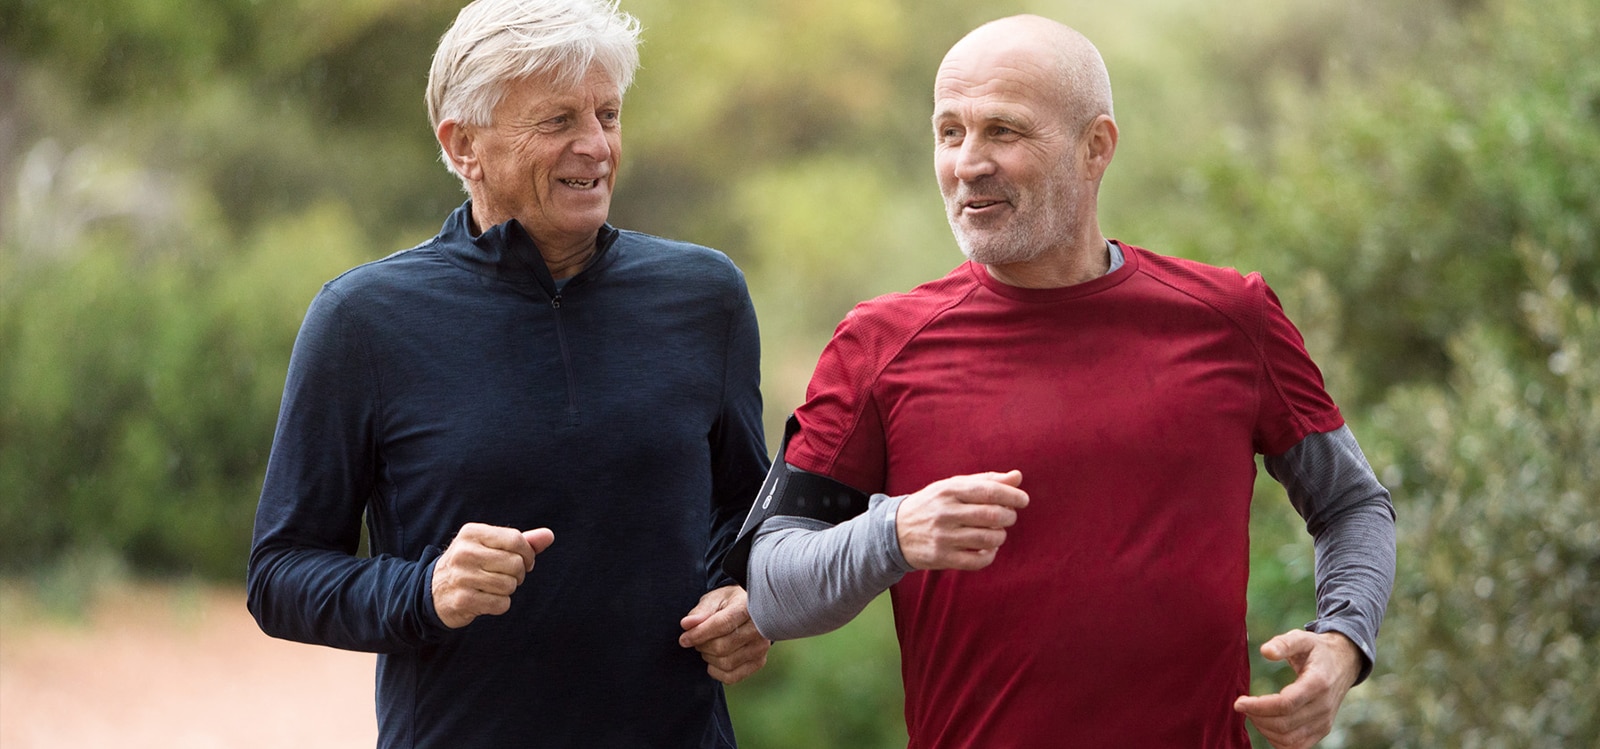 Dva muškarca u pedesetim-šezdesetim godinama trče napolju